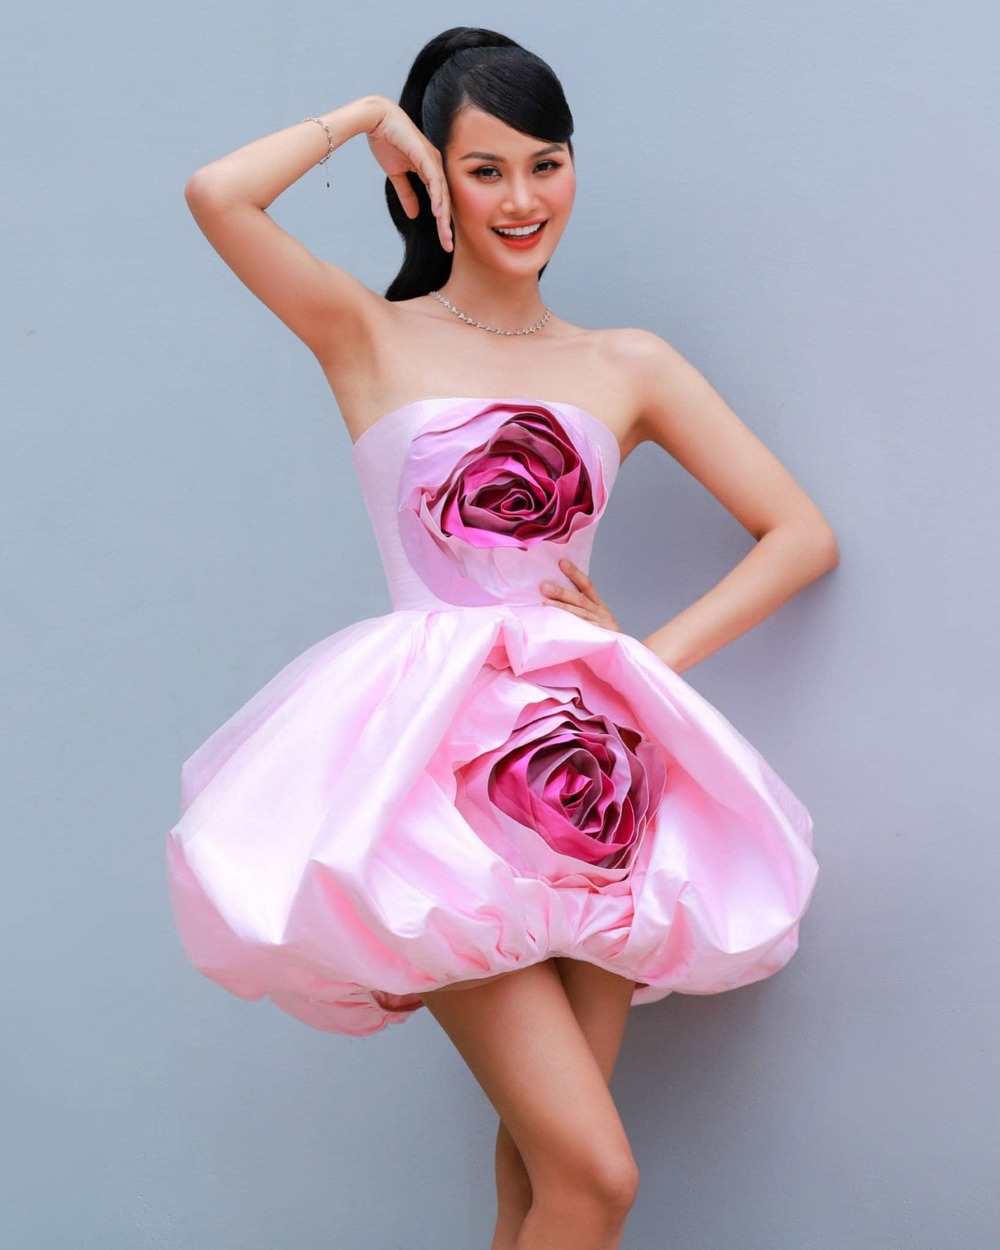  
Mỹ nhân Gia Lai để lại ấn tượng đẹp về tài năng và sắc vóc khi lần thứ 3 tham gia Miss Universe Vietnam. (Ảnh: FB Hương Ly)